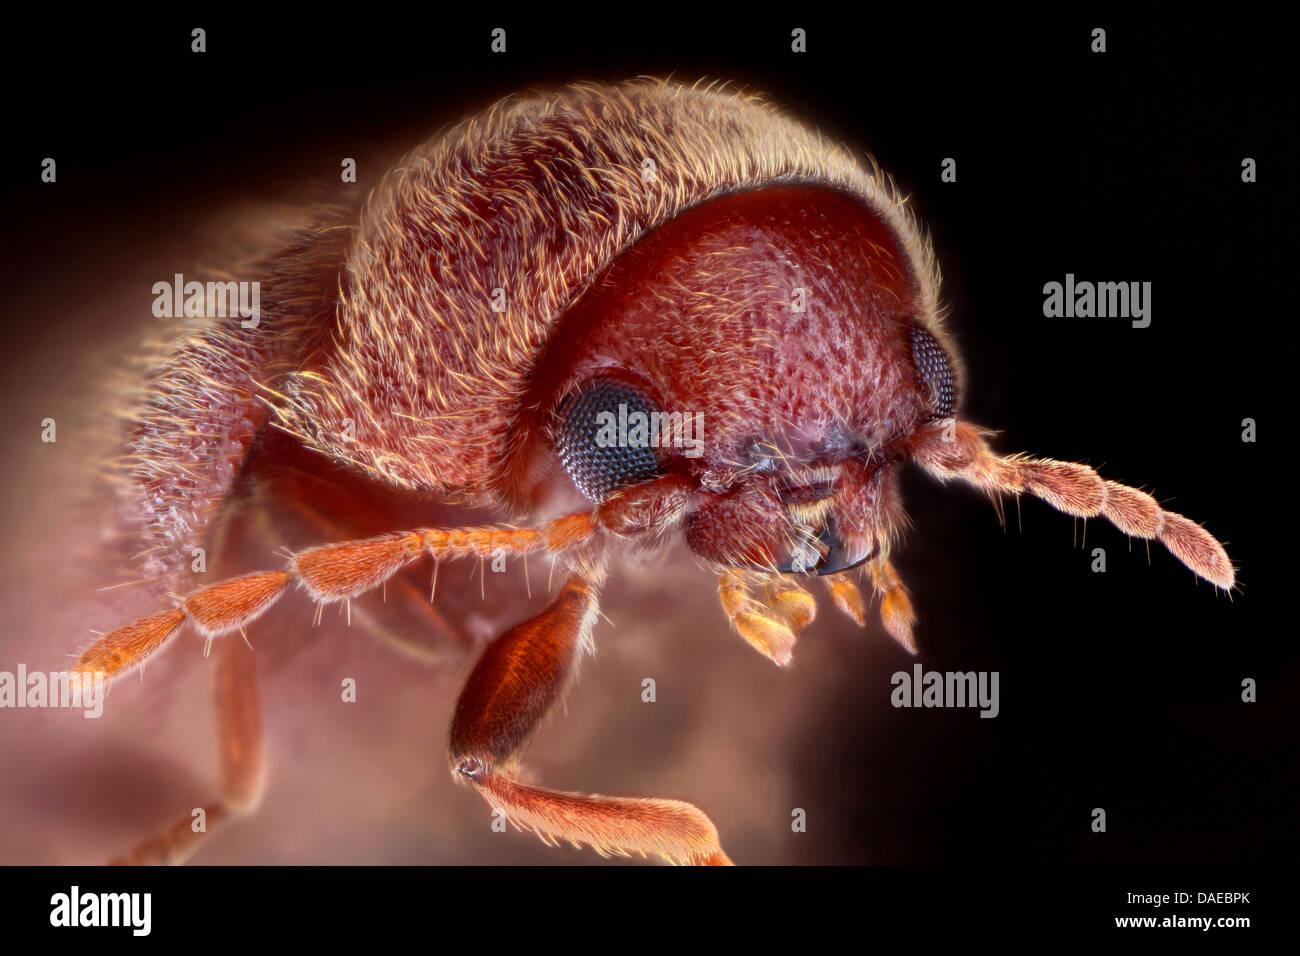 drugstore beetle, drug store weevil, biscuit beetle, bread beetle (Stegobium paniceum), head of a drugstore beetle, Germany Stock Photo